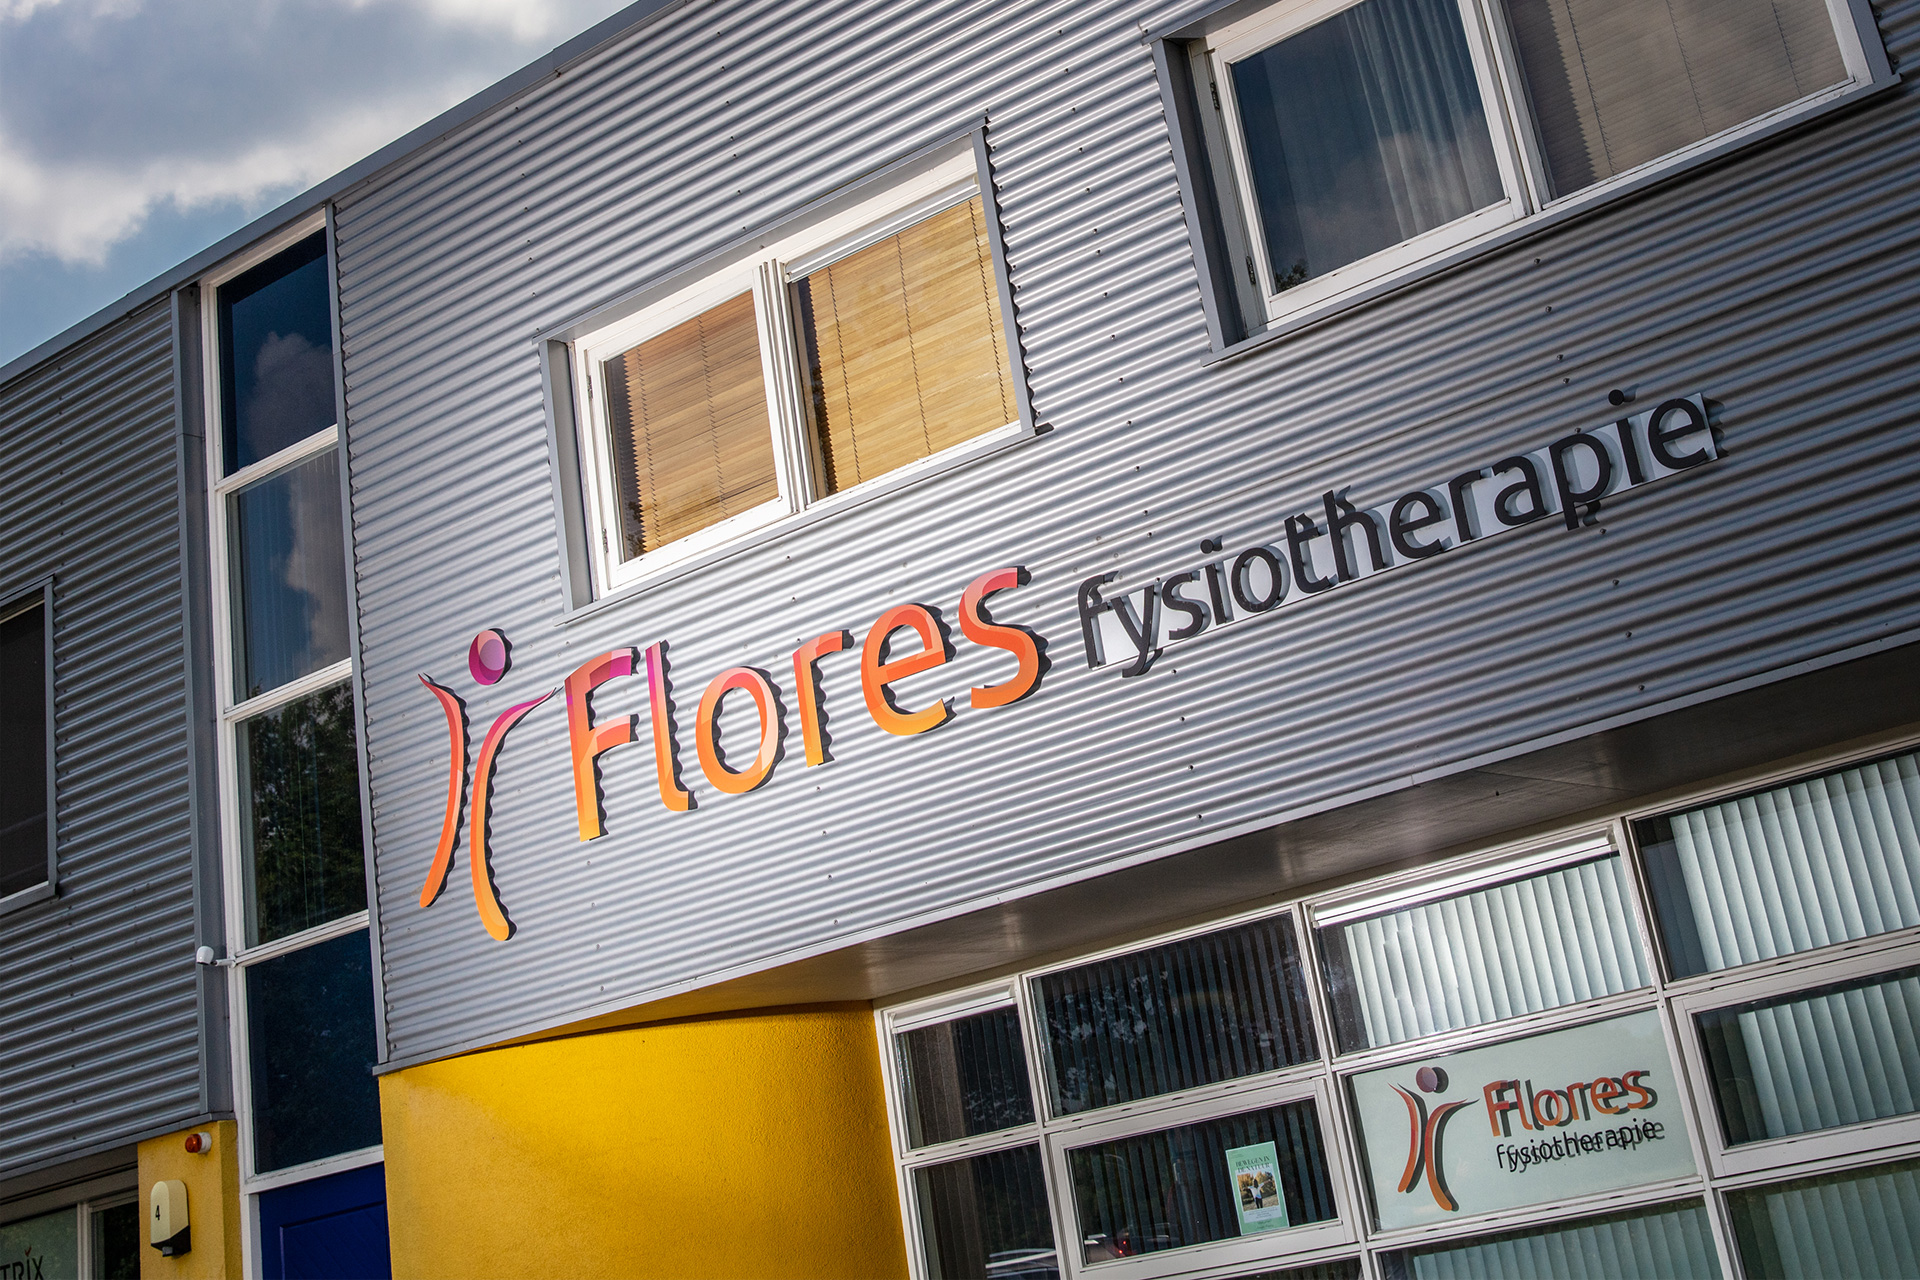 Flores Fysiotherapie | Fysiotherapie met een persoonlijke aanpak